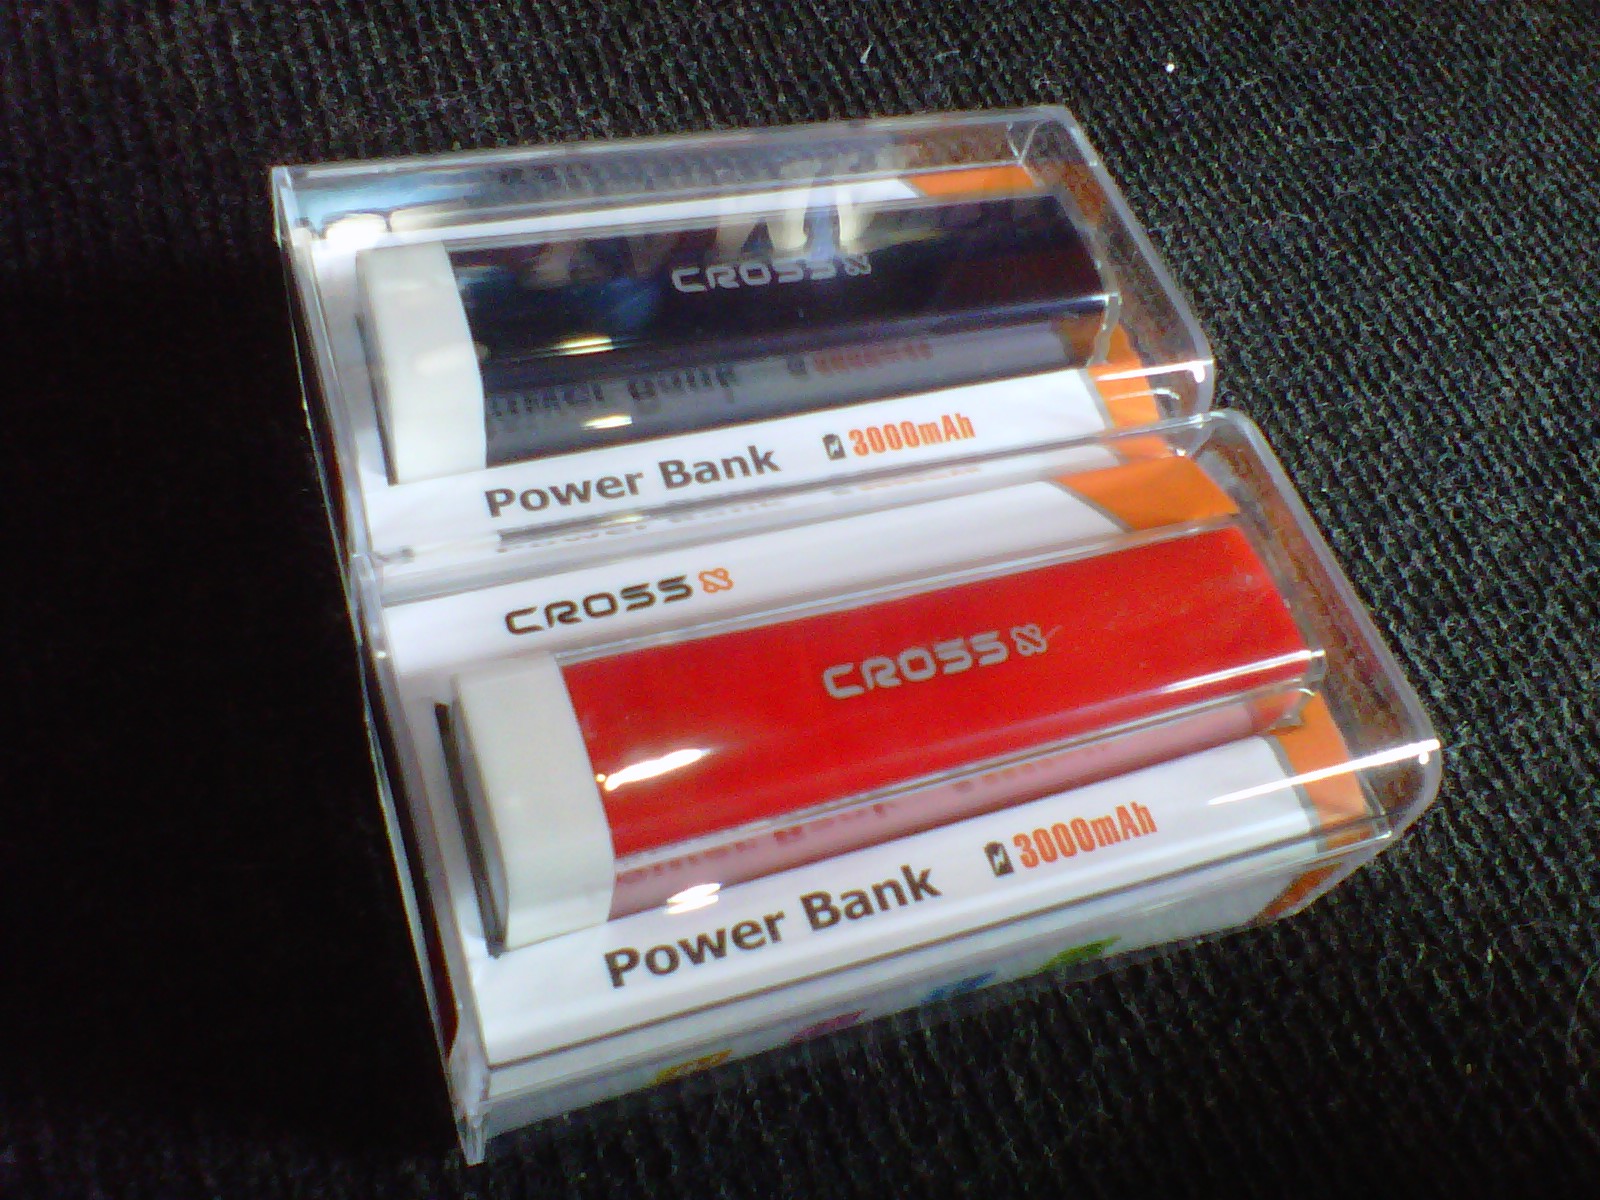 Cross bank